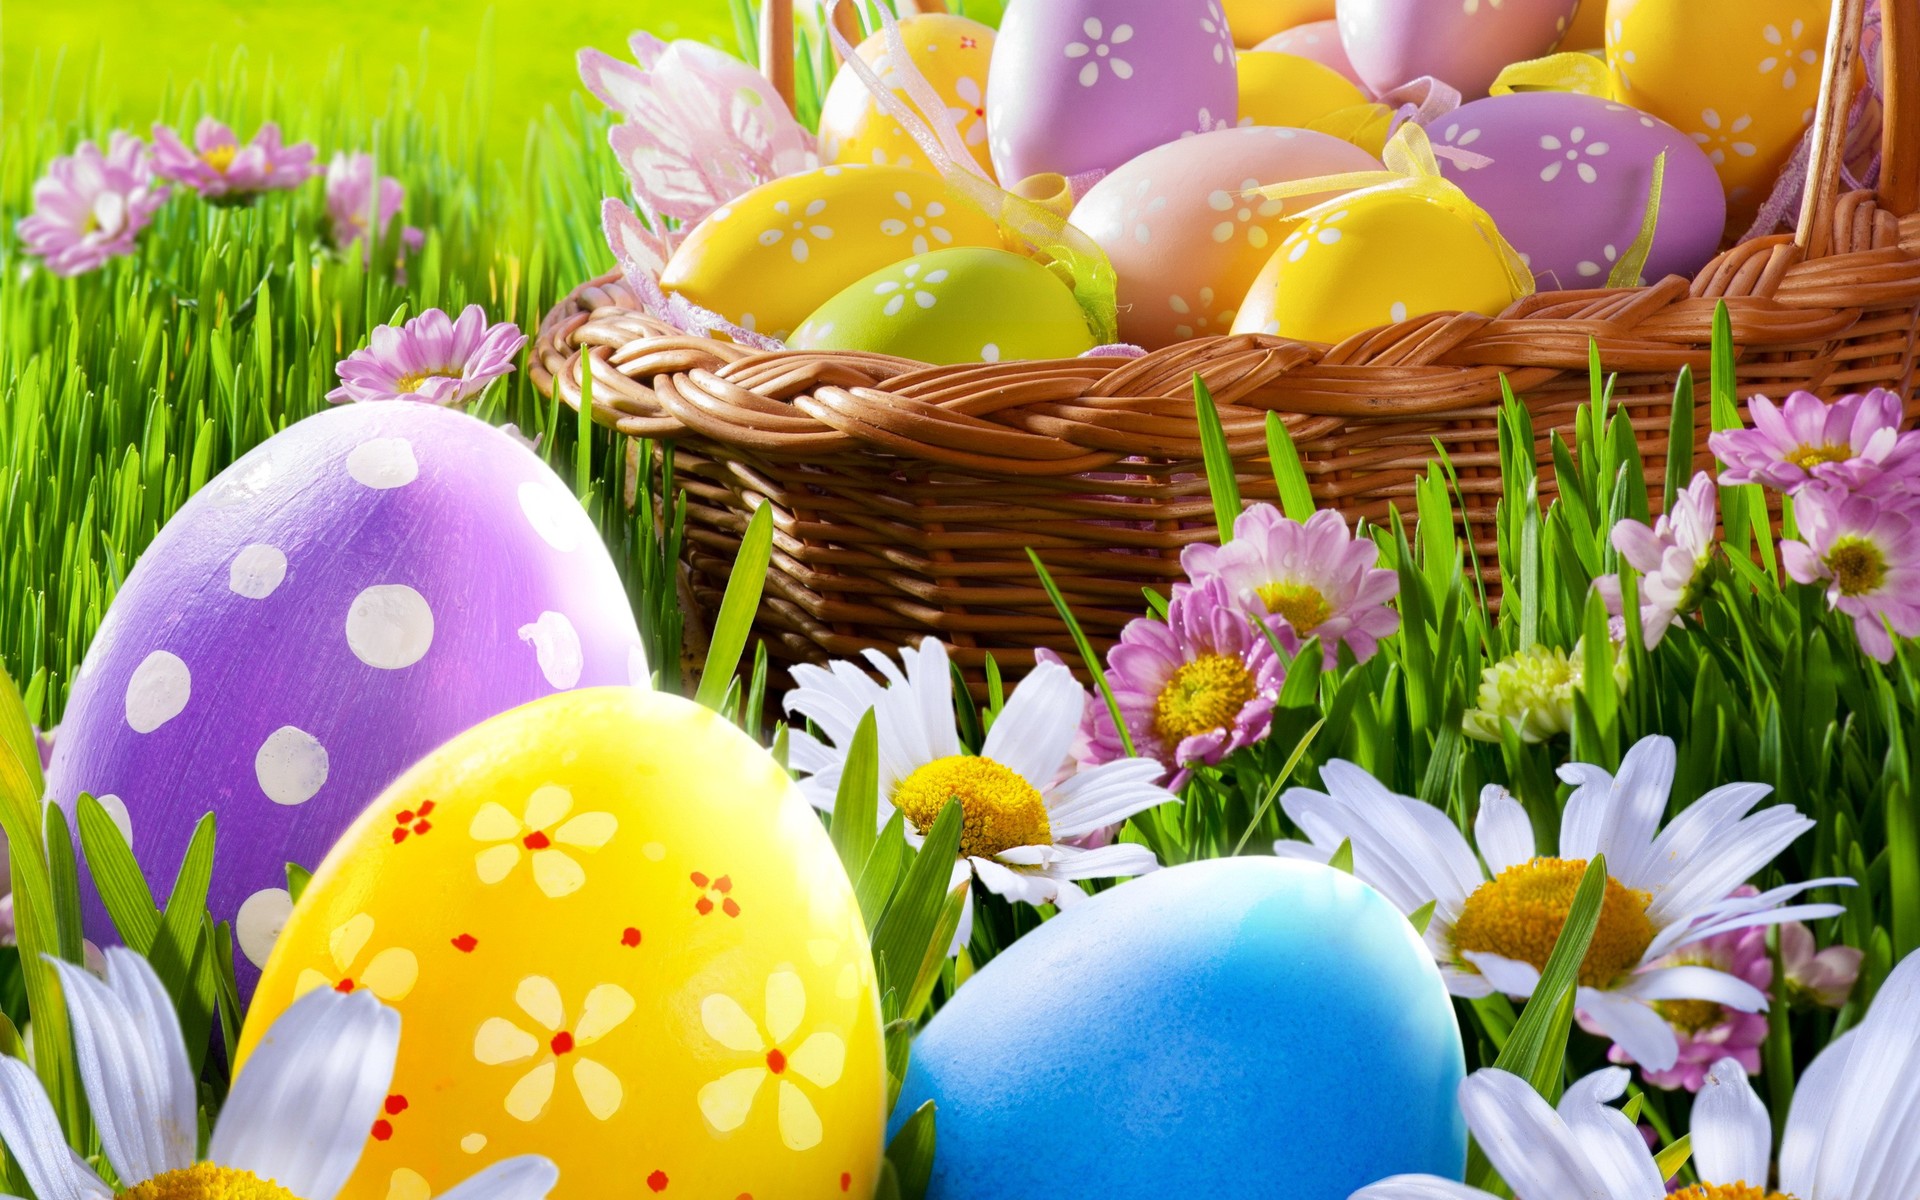 Free download wallpaper Grass, Easter, Flower, Holiday, Colorful, Basket, Spring, Egg, Easter Egg on your PC desktop